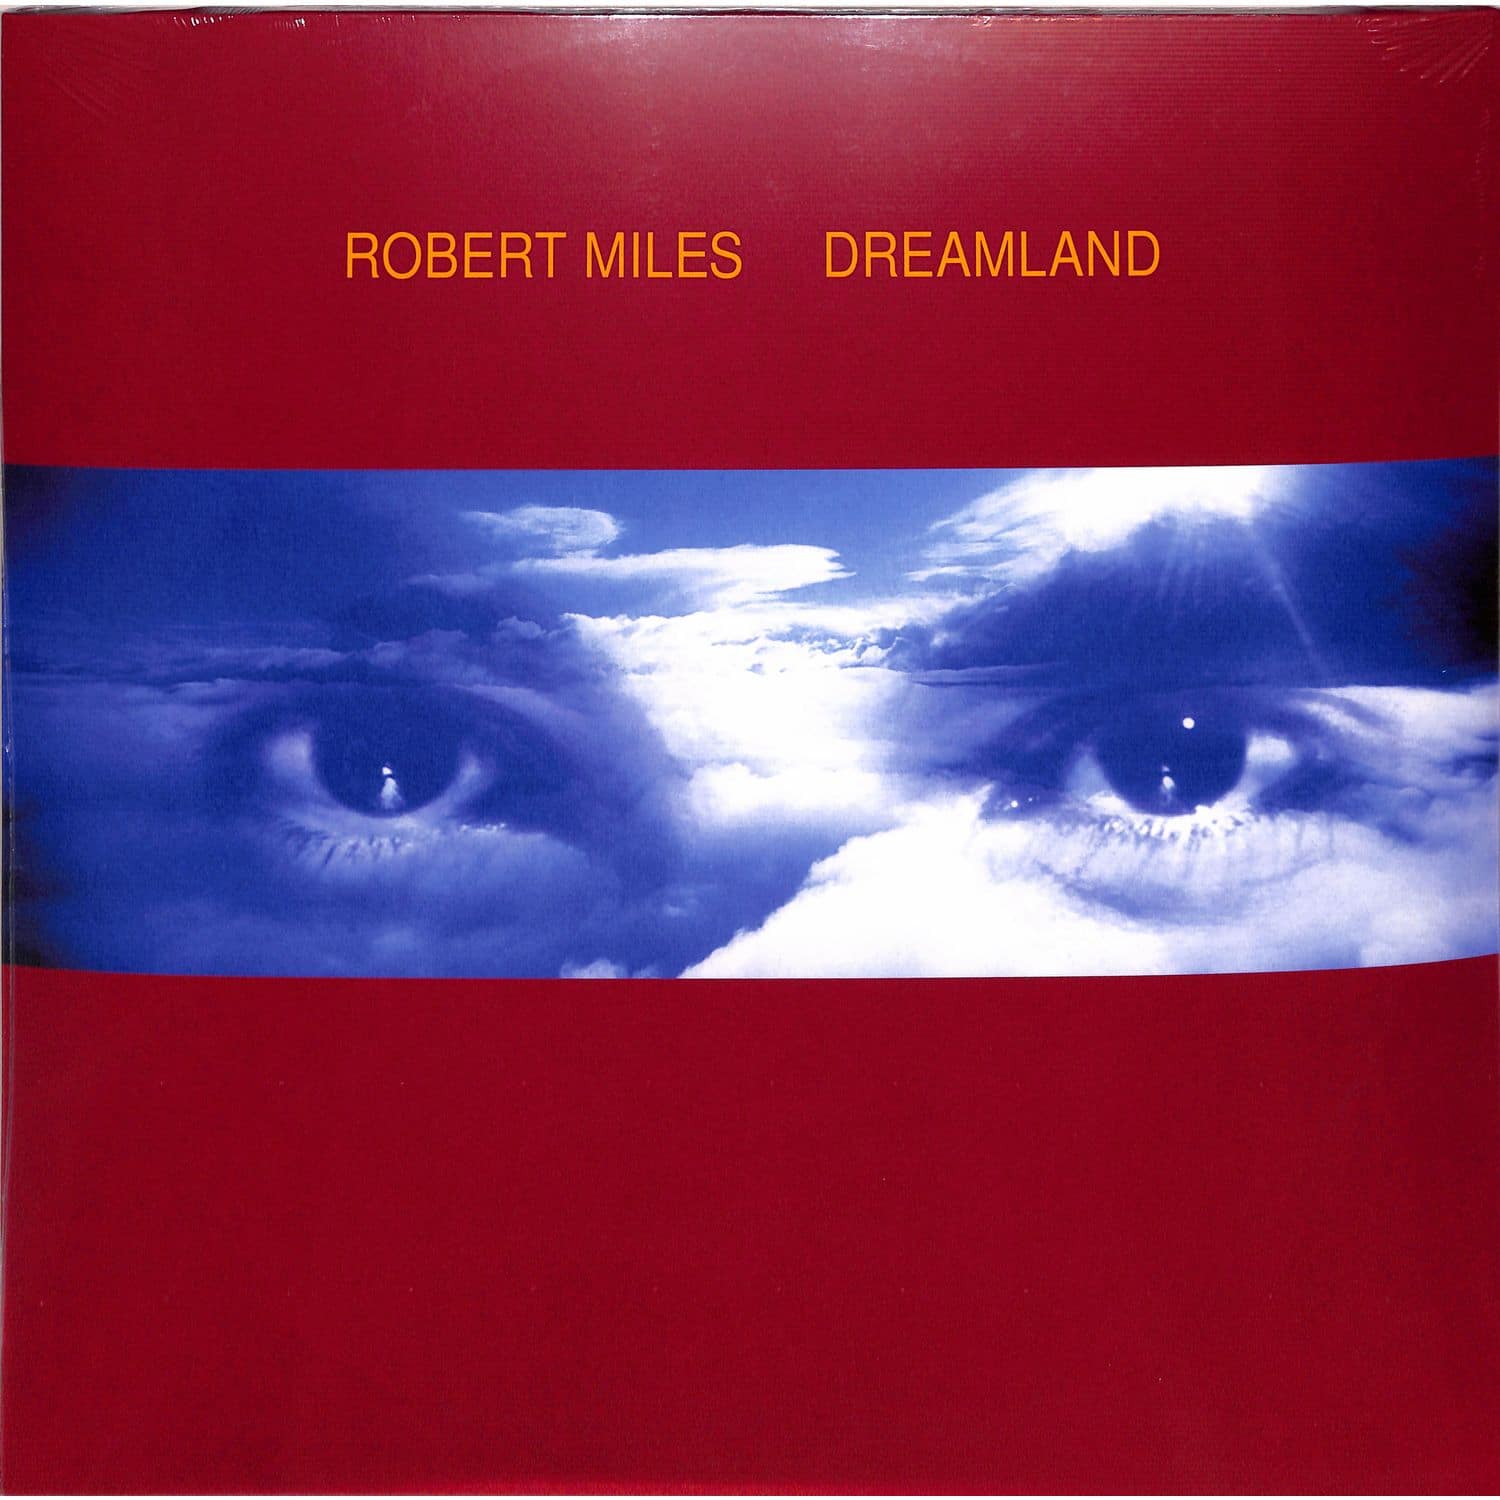 Robert miles dreaming. Robert Miles - Dreamland (1996) компакт диск. Robert Miles Dreamland винил. Robert Miles "Dreamland (2lp)".